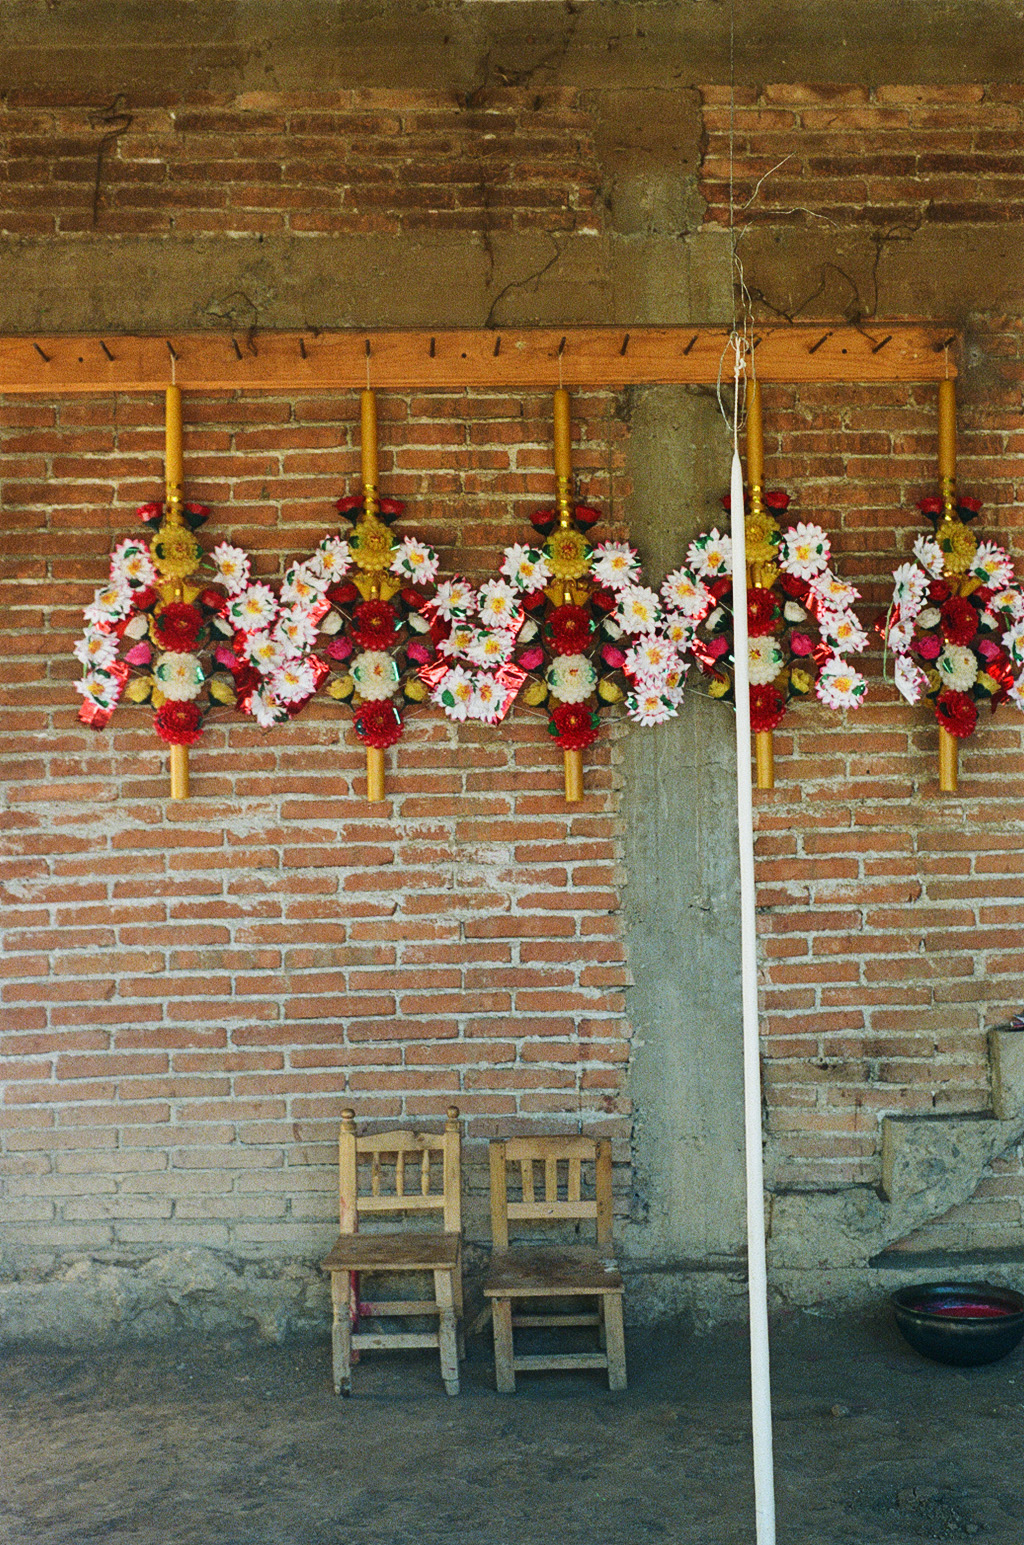 Las velas de doña Viviana. Teotitlan del Valle, Oaxaca. 35mm. December, 2022